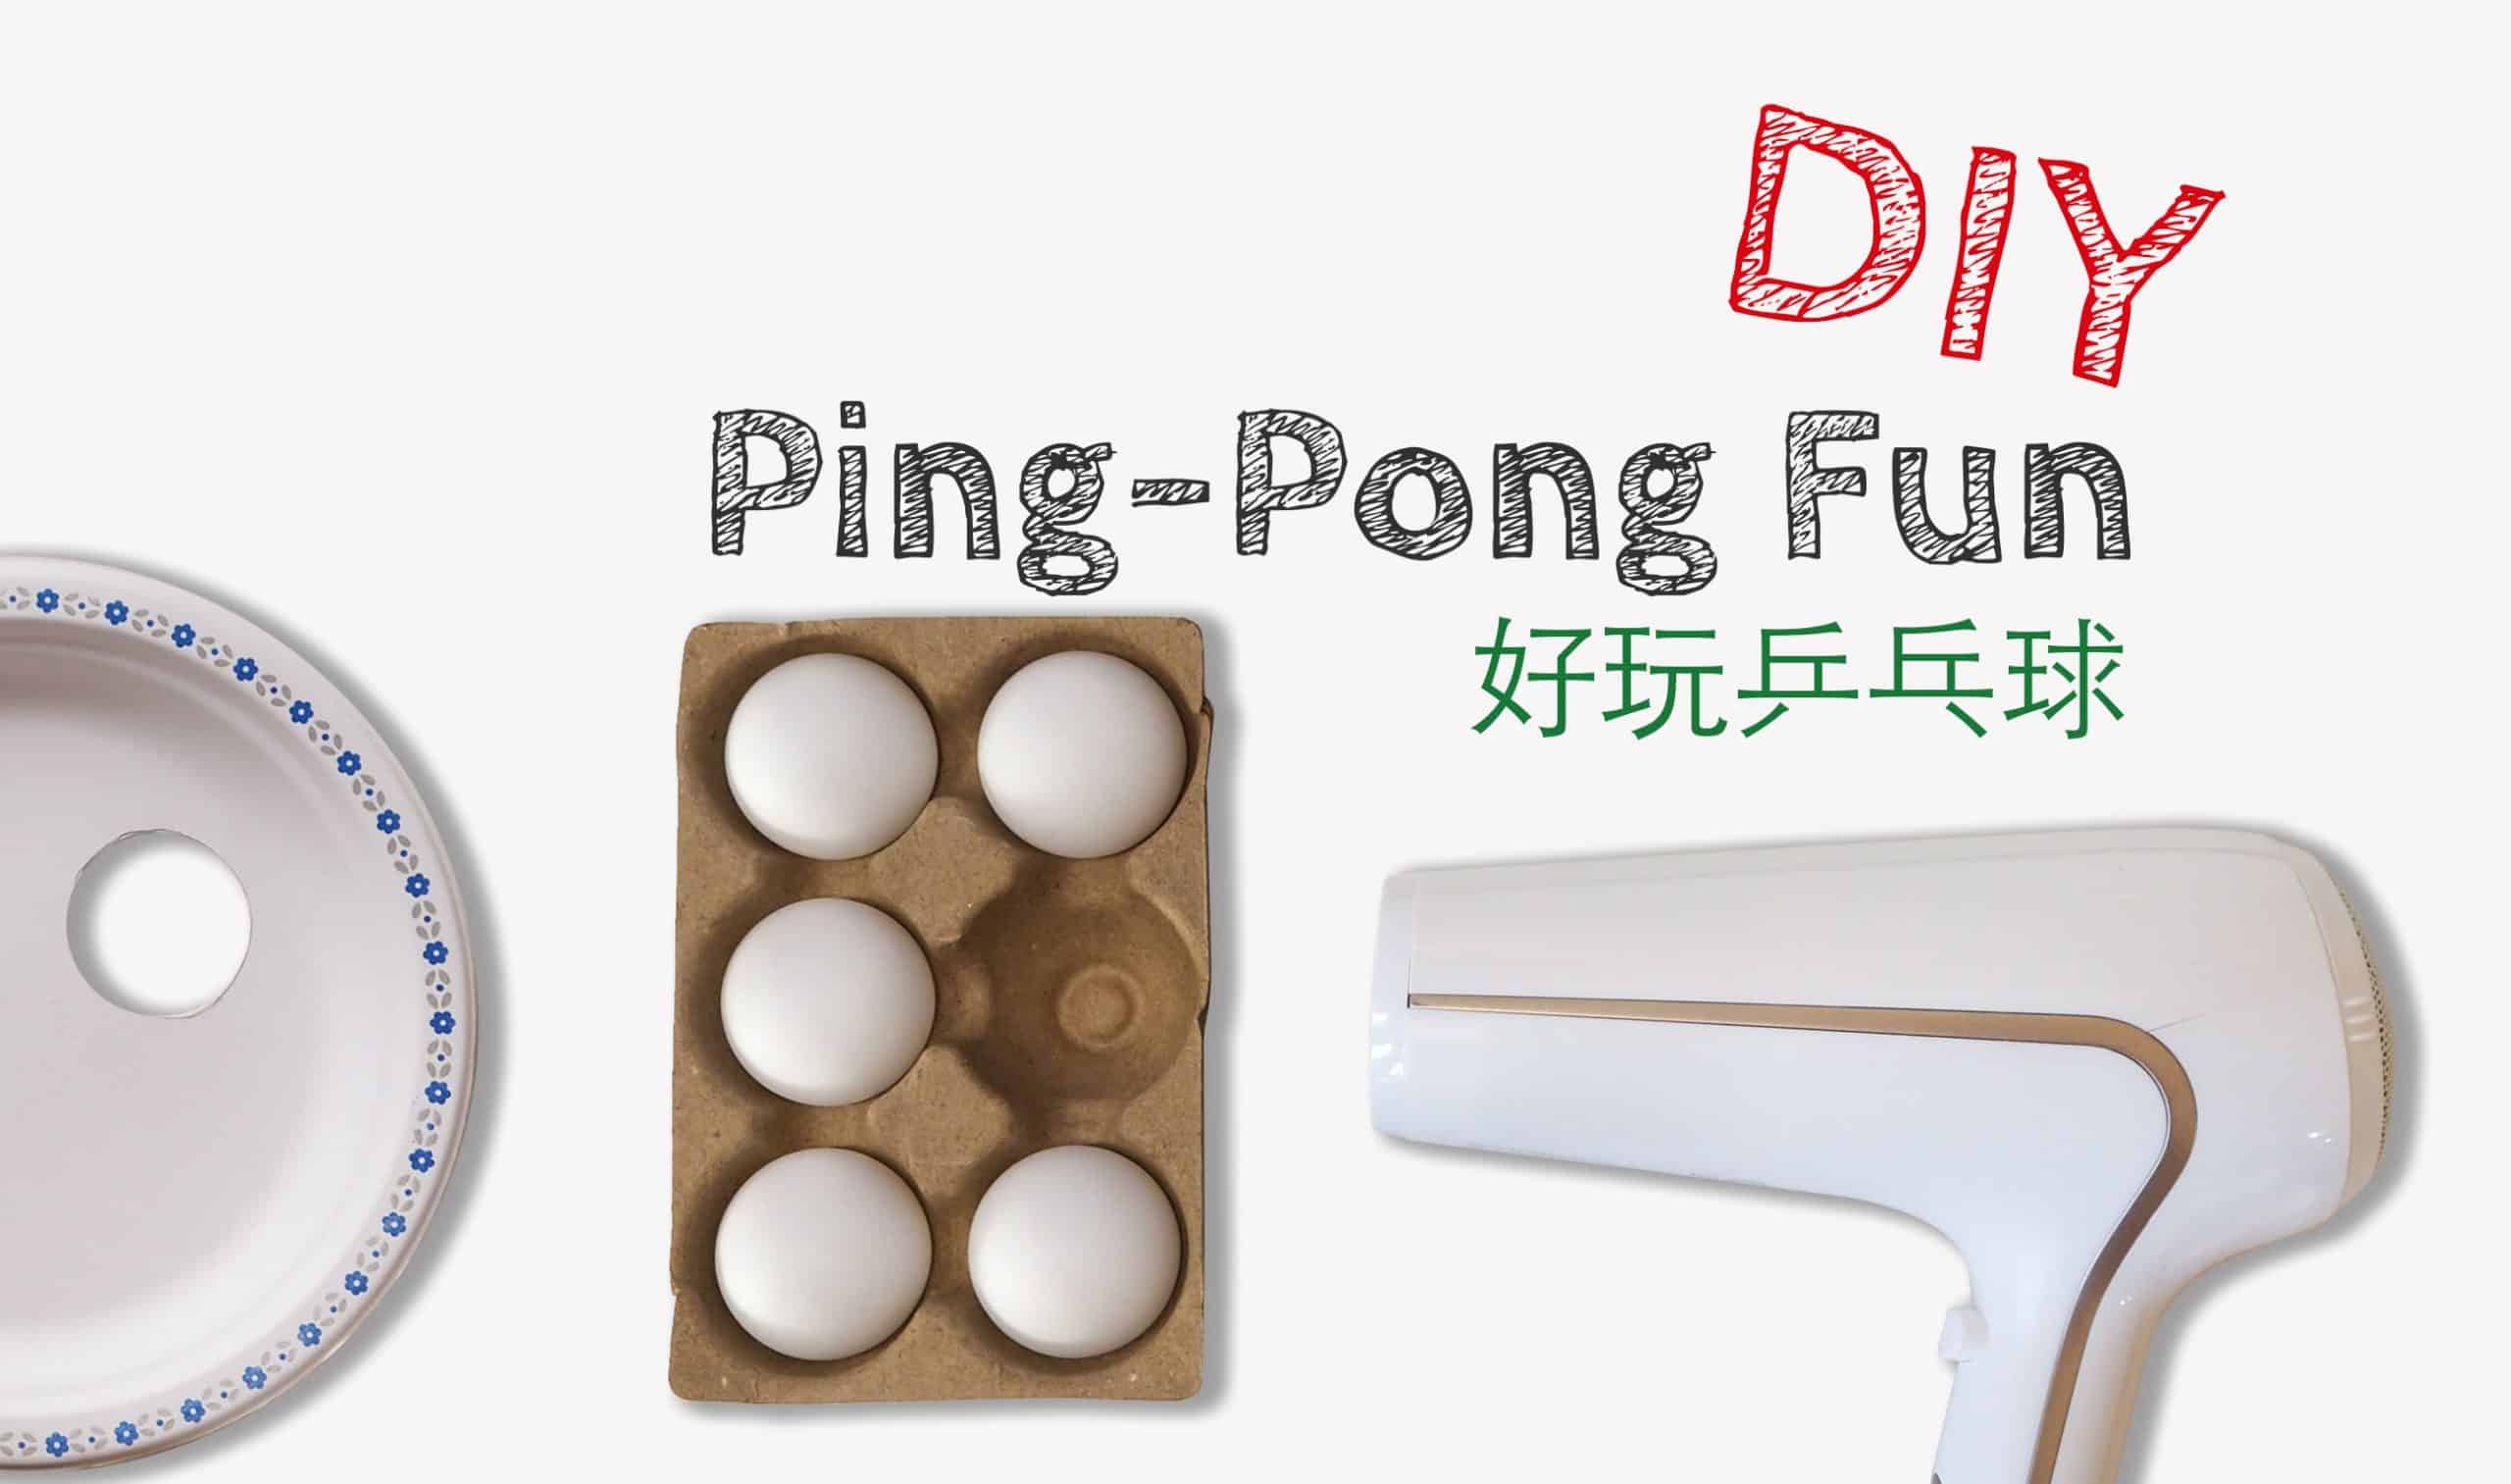 DIY 小遊戲 - 乒乓球的兩種玩法 DIY Ping Pong Fun